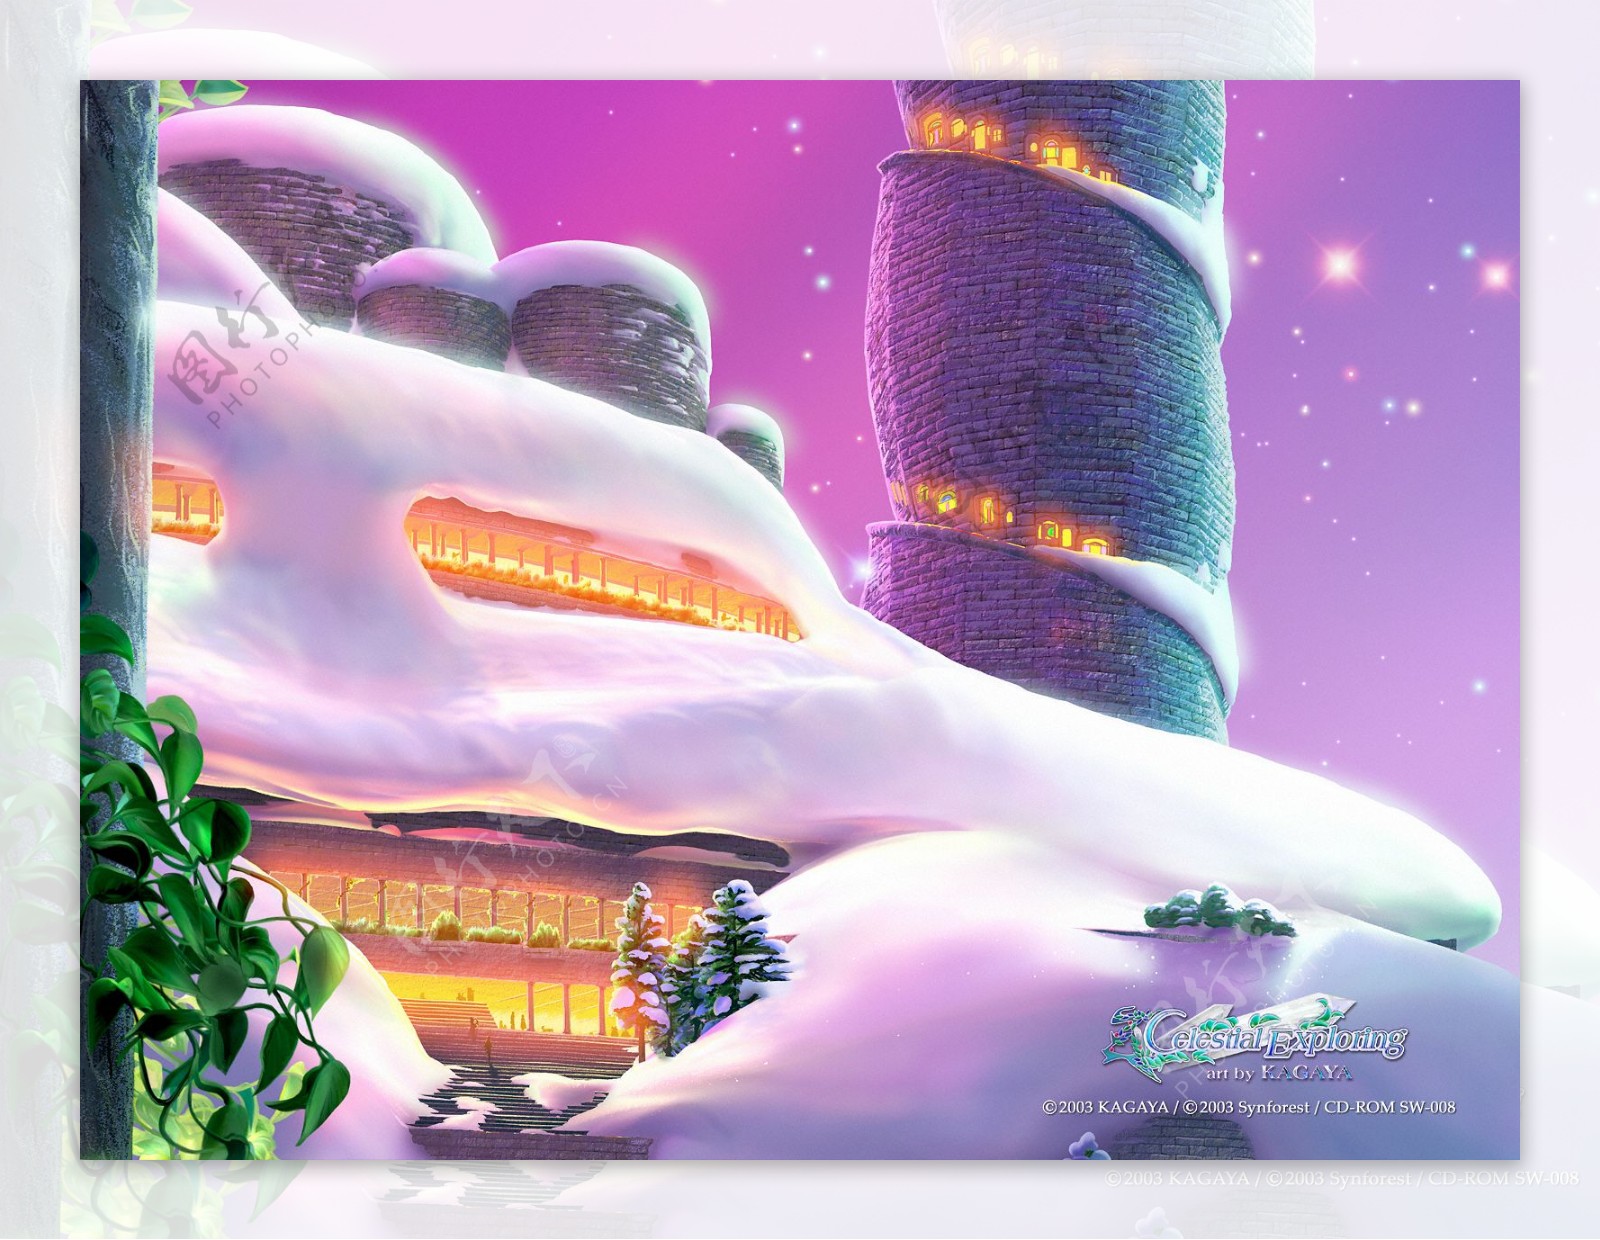 梦幻冰雪世界石堡高塔动漫桌面背景